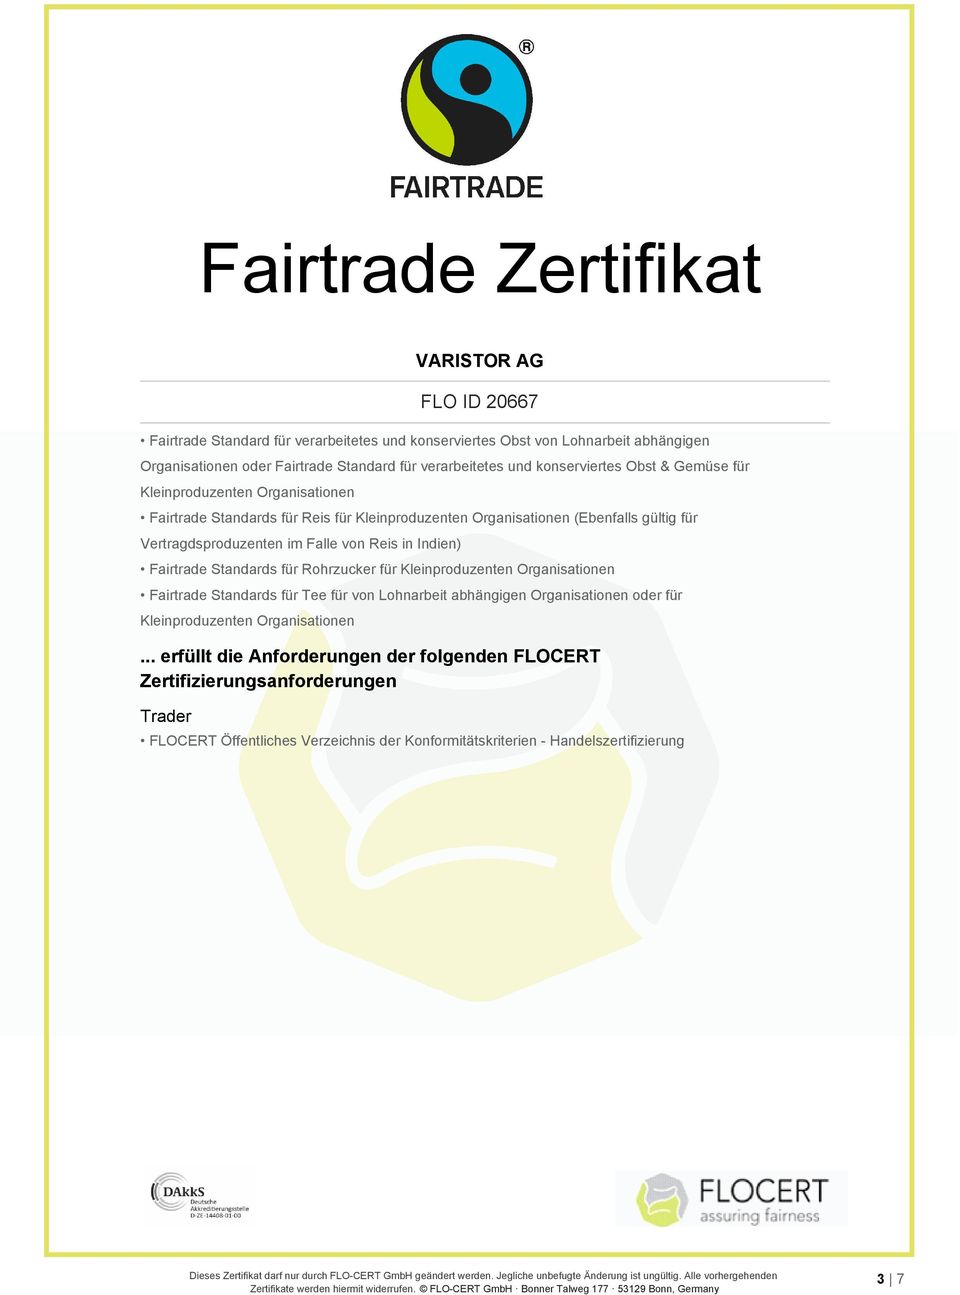 Fairtrade Standards für Rohrzucker für Kleinproduzenten Organisationen Fairtrade Standards für Tee für von Lohnarbeit abhängigen Organisationen oder für Kleinproduzenten